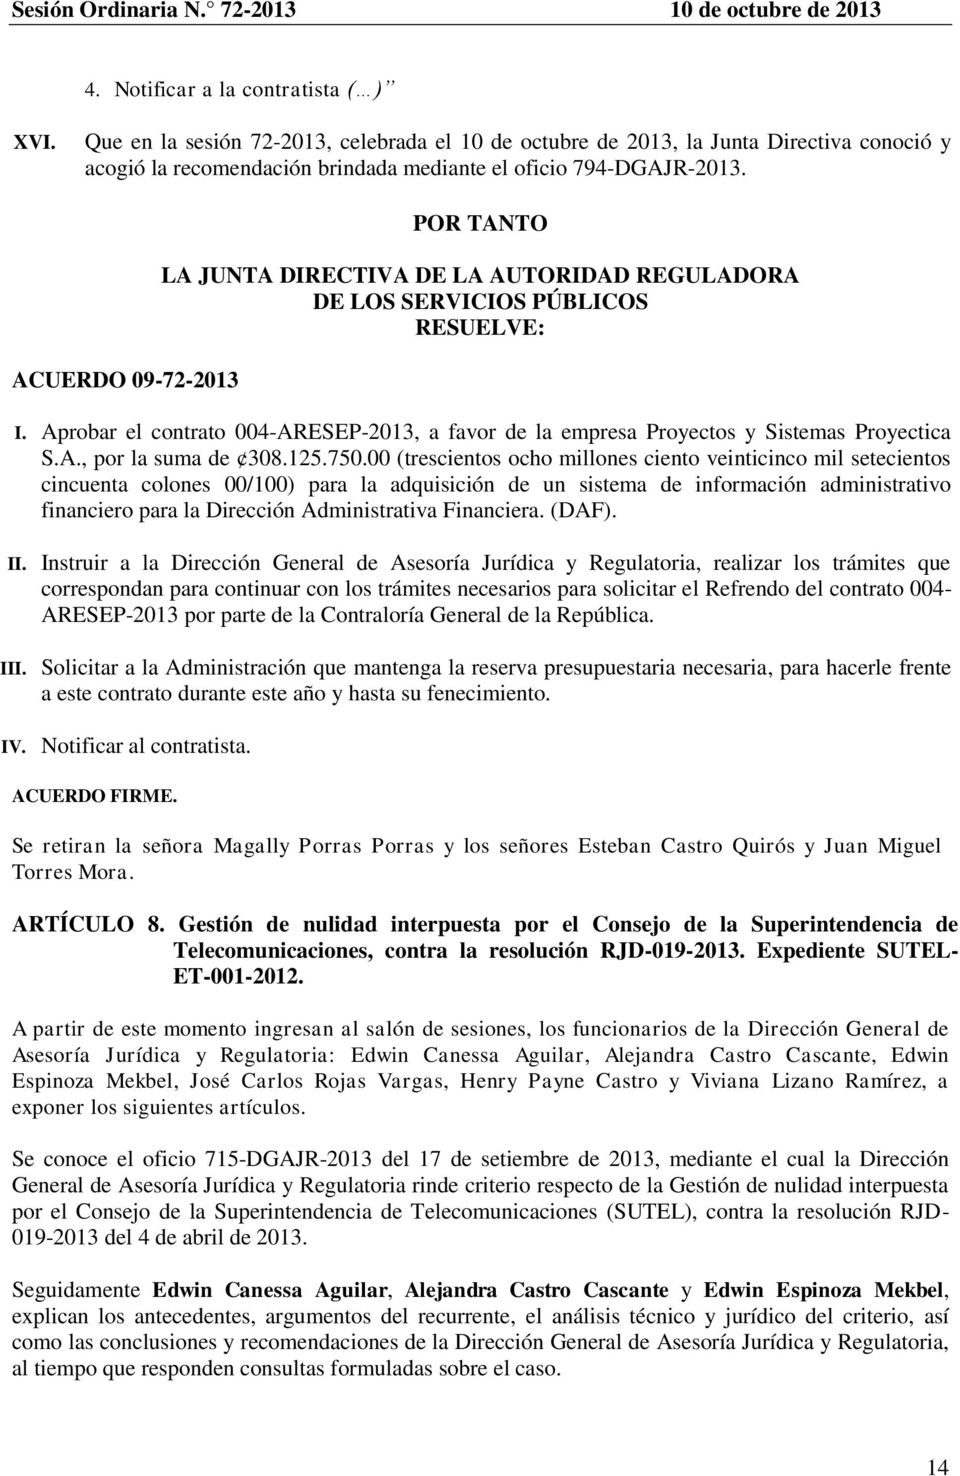 Aprobar el contrato 004-ARESEP-2013, a favor de la empresa Proyectos y Sistemas Proyectica S.A., por la suma de 308.125.750.